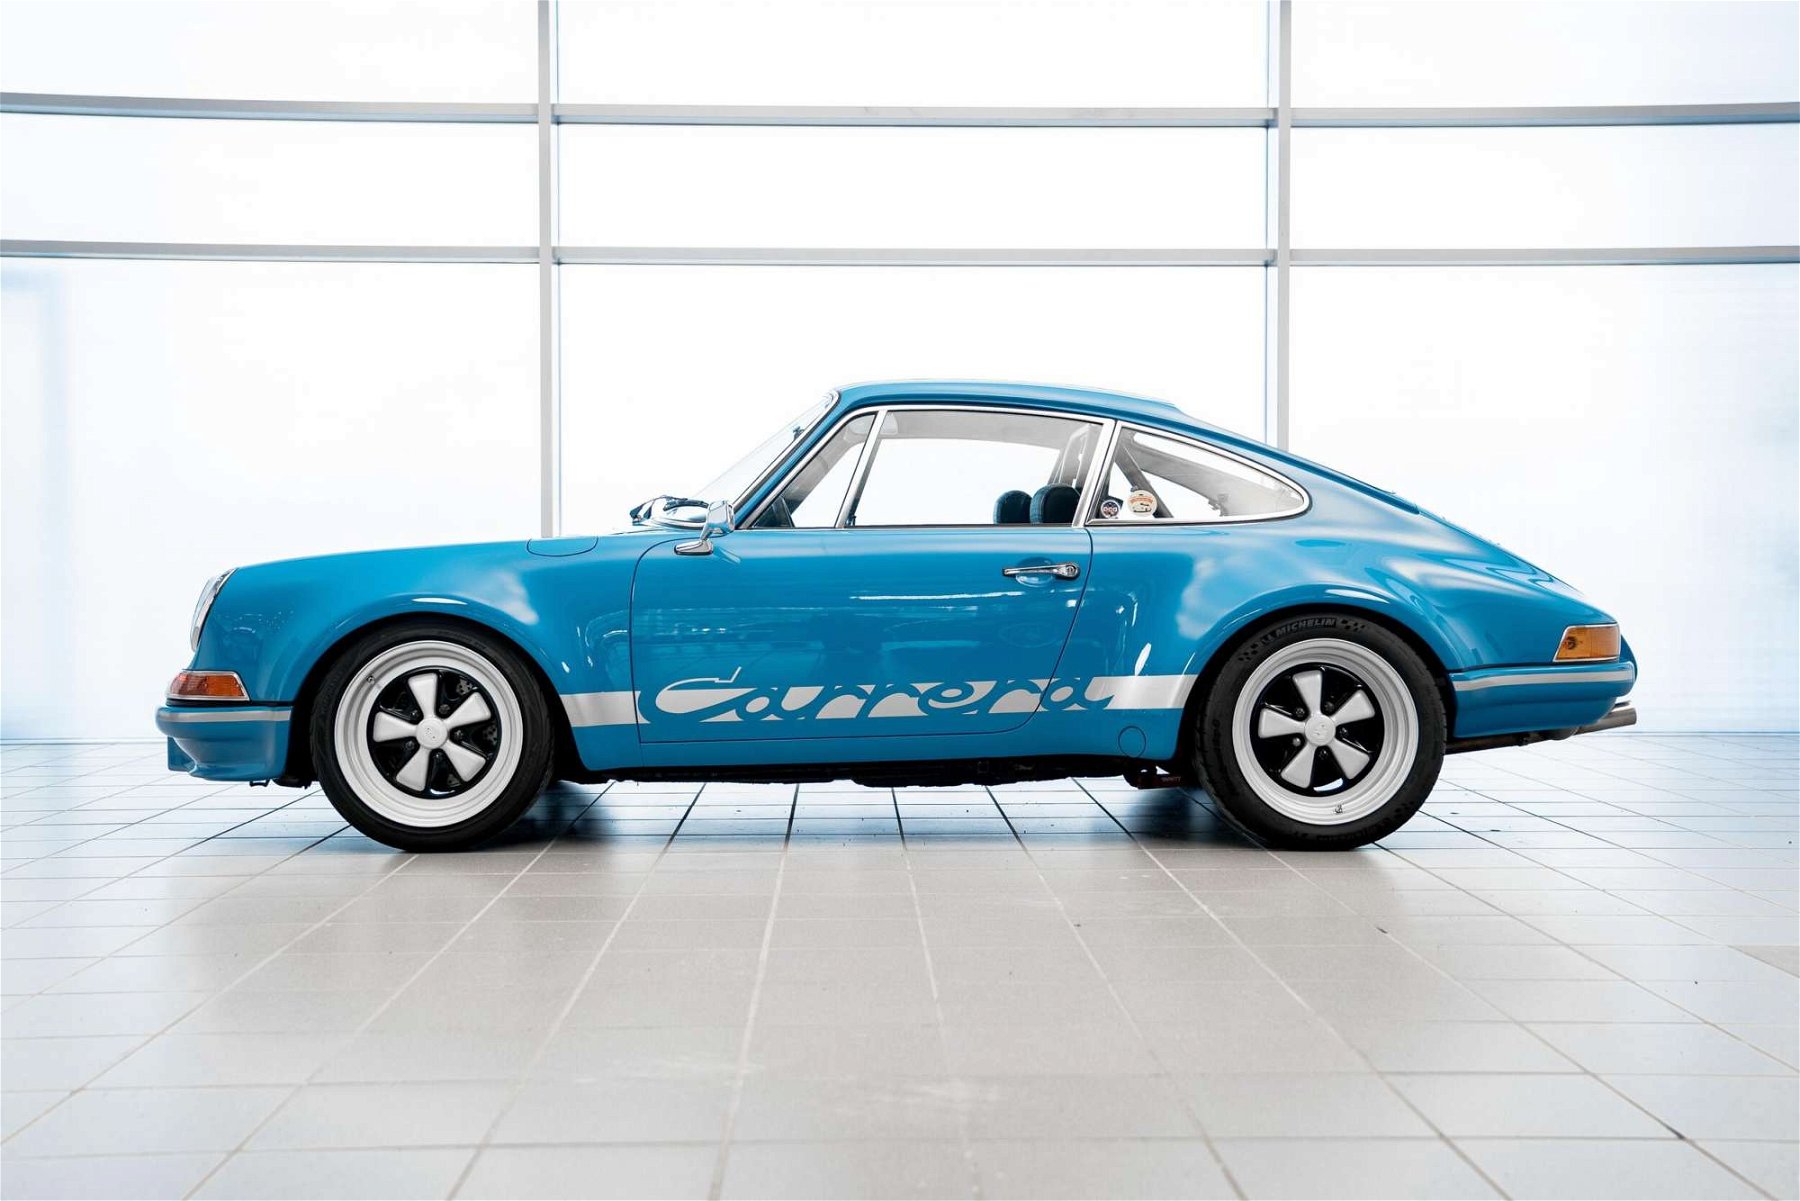 Shades Of Blue Porsche Colors